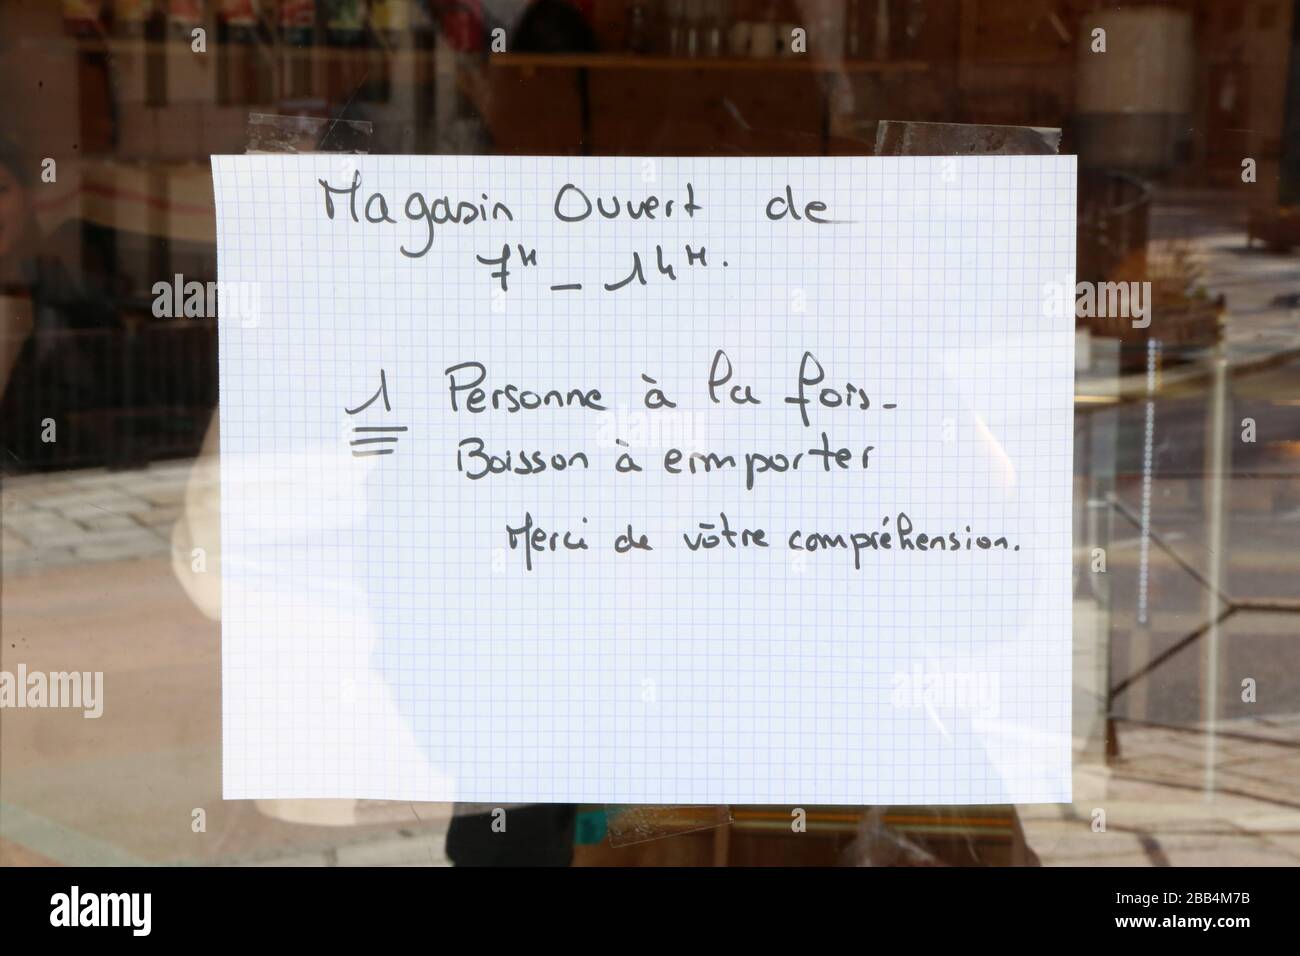 Affari : magasin ouvert de 7h à 14h. Une personne à la fois. Boissons à emporter. Covid19. Alta Savoia. Francia. Foto Stock